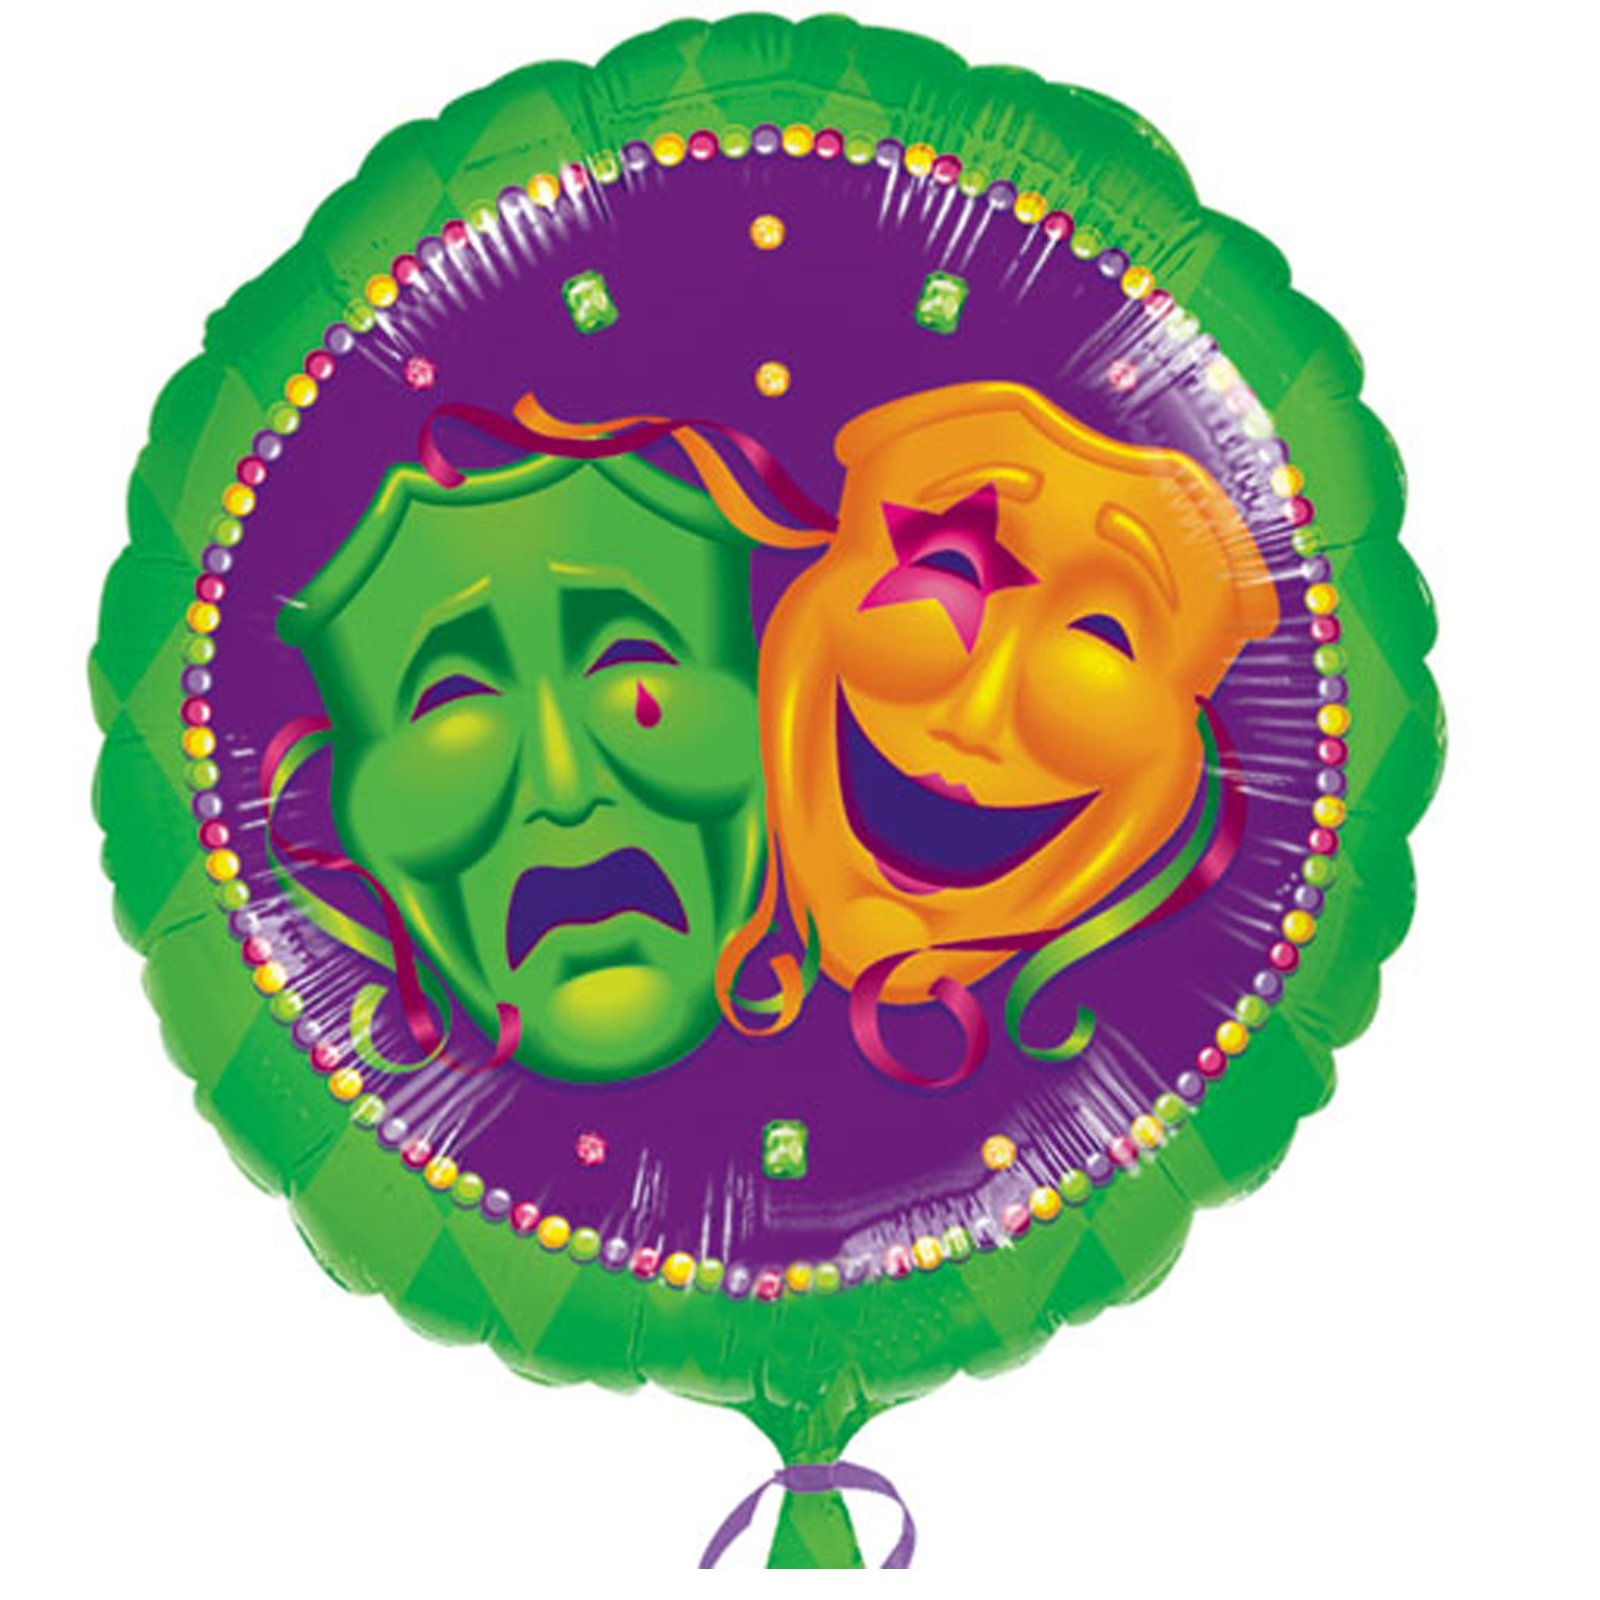 Masquerade Comedy/Tragedy Faces 18" Foil Balloon